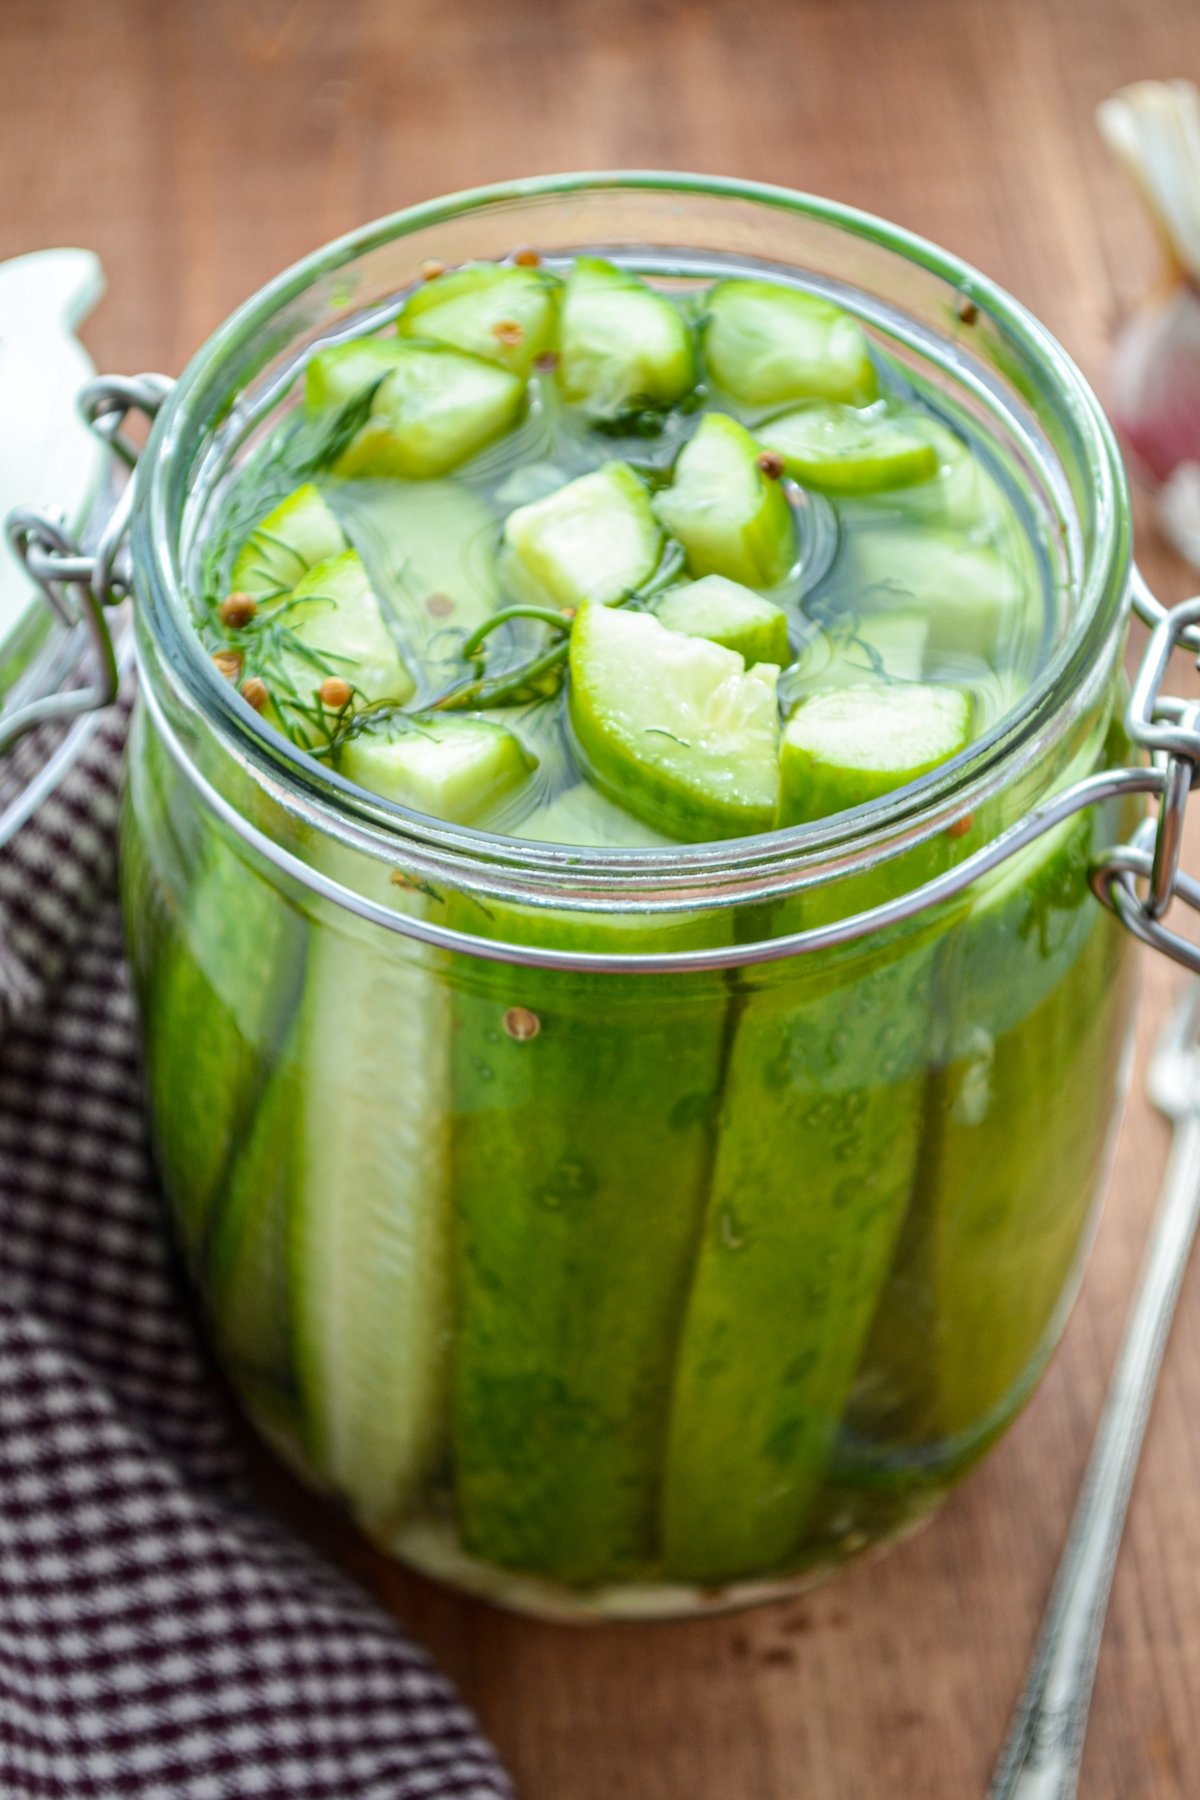 A jar of refrigerator pickles, resting alongside a gingham napkin.